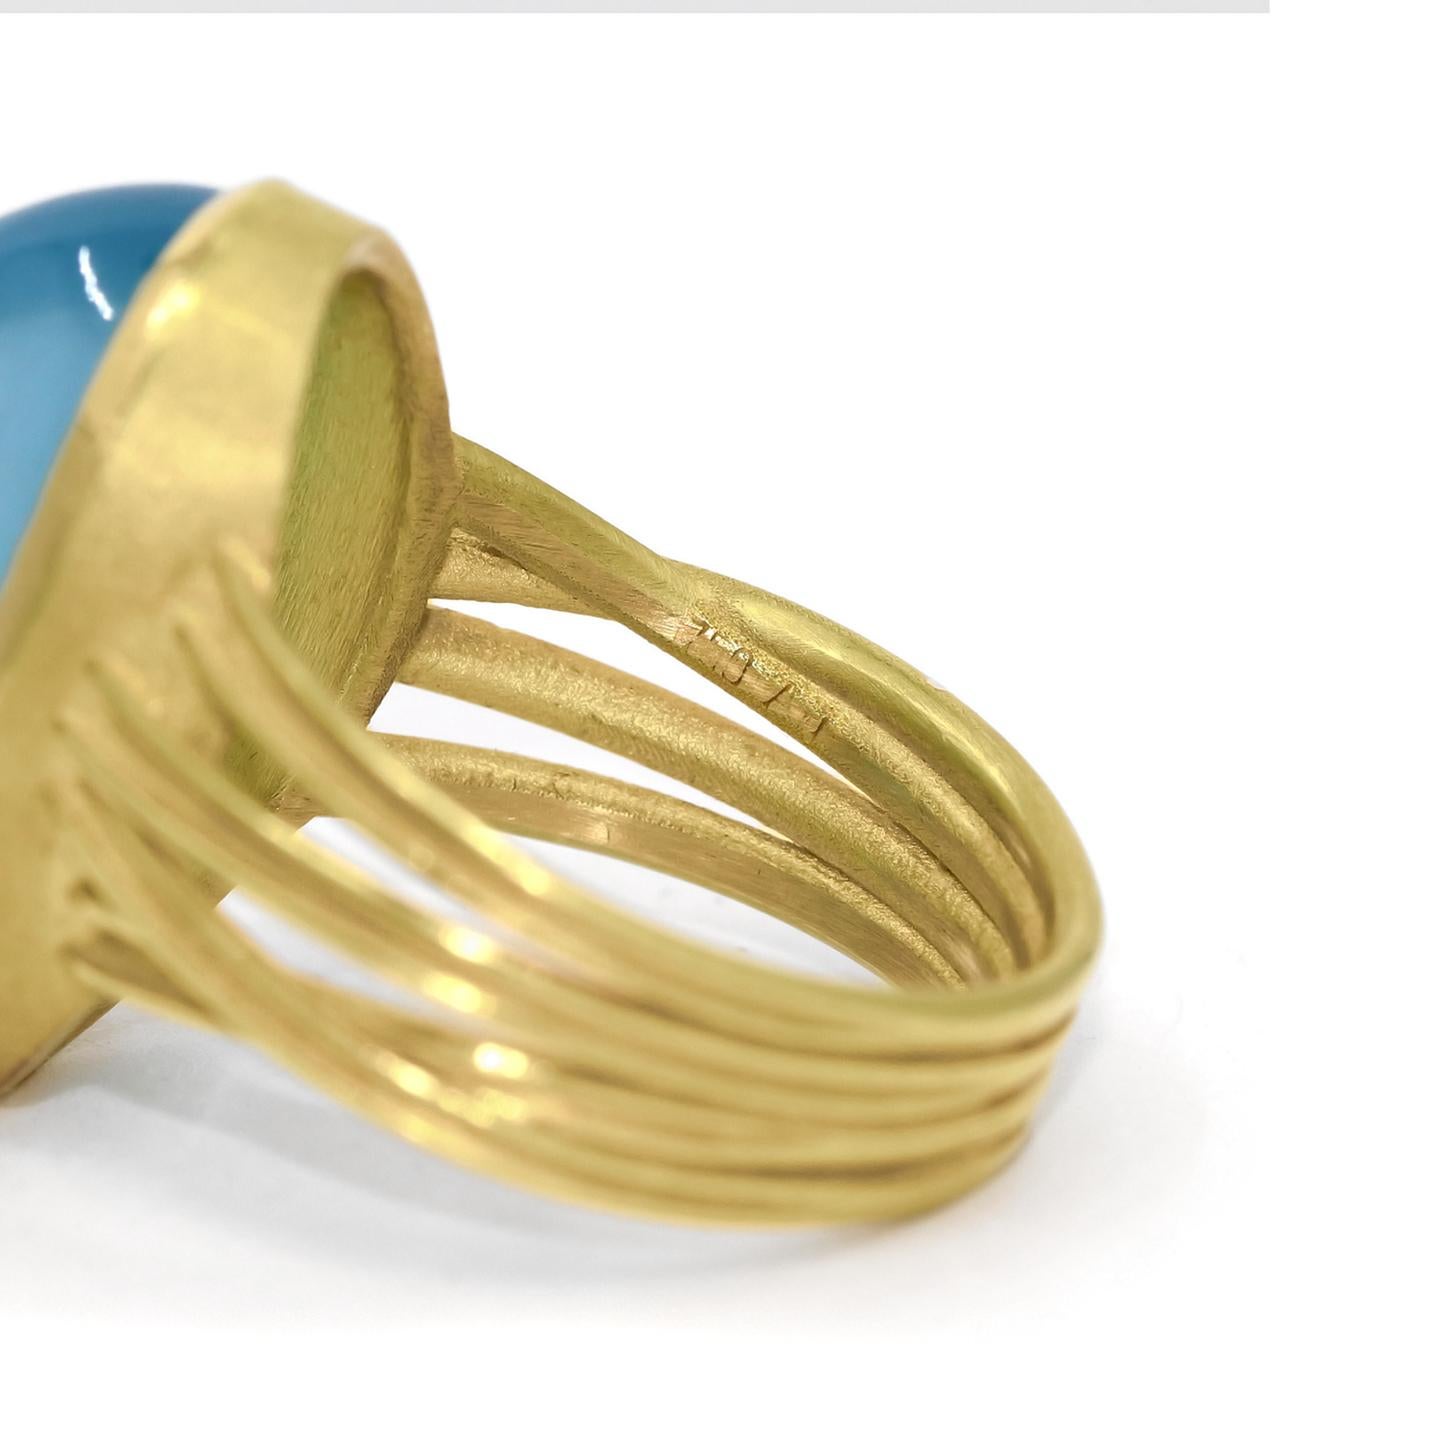 Barbara Heinrich Glowing Gem Aquamarine Oval Gold One of a Kind Ribbon Ring 1